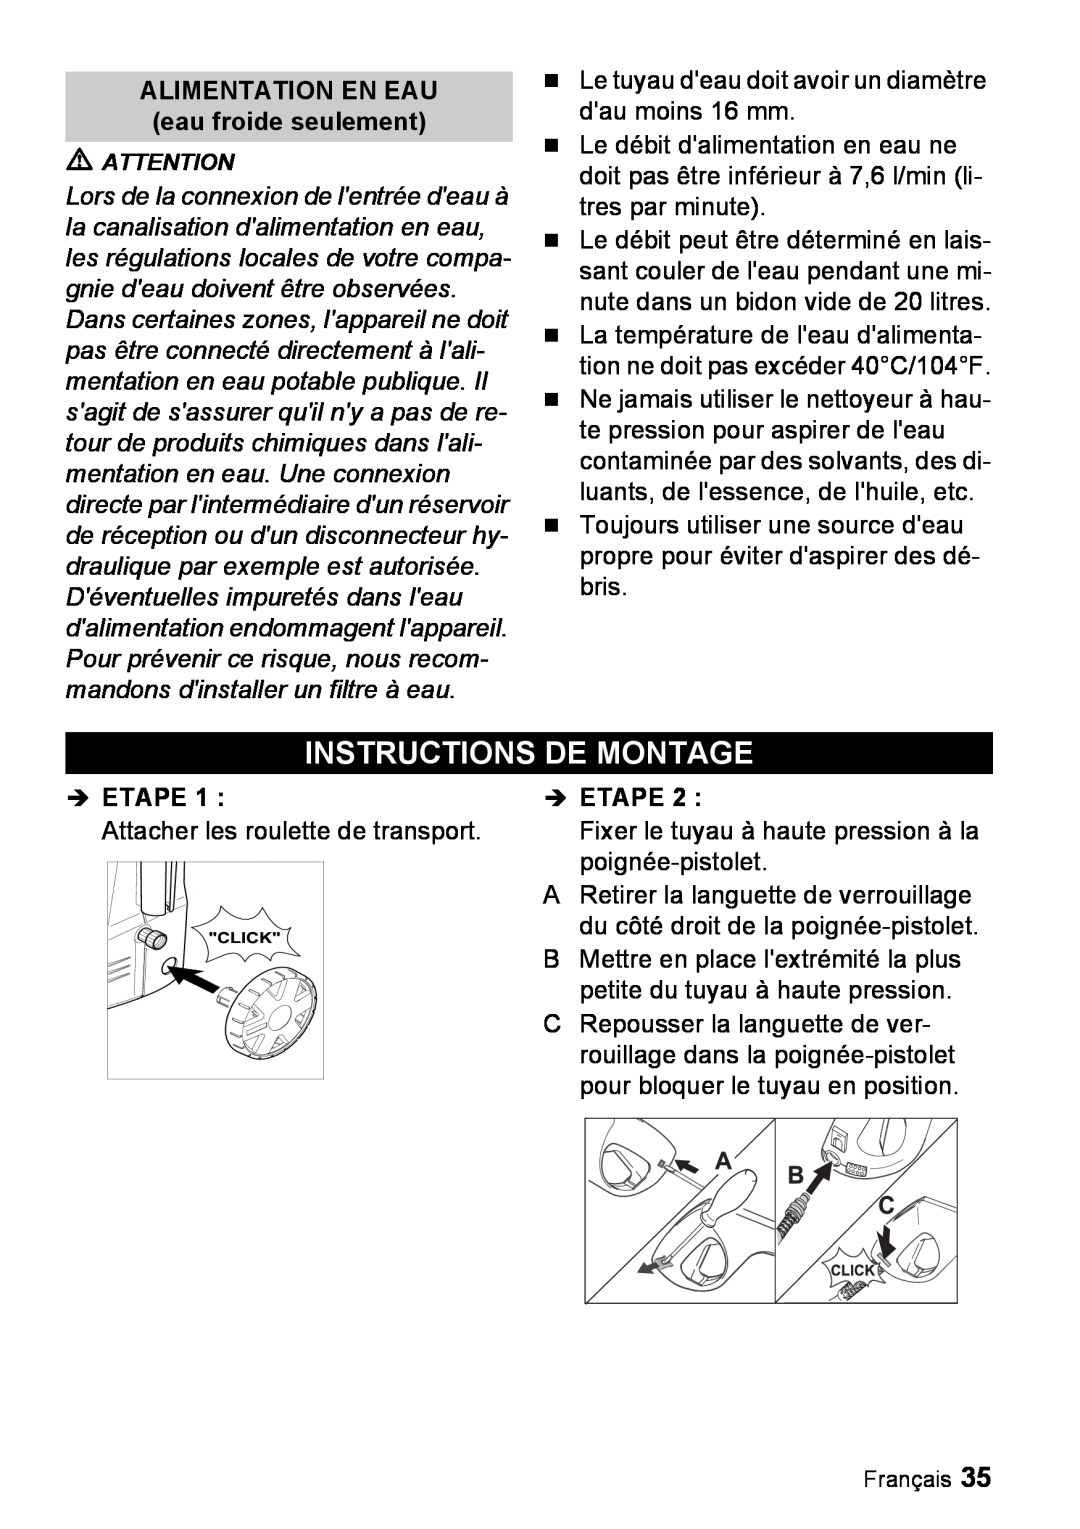 Karcher K 2.56M manual Instructions De Montage, ALIMENTATION EN EAU eau froide seulement, Î Etape 